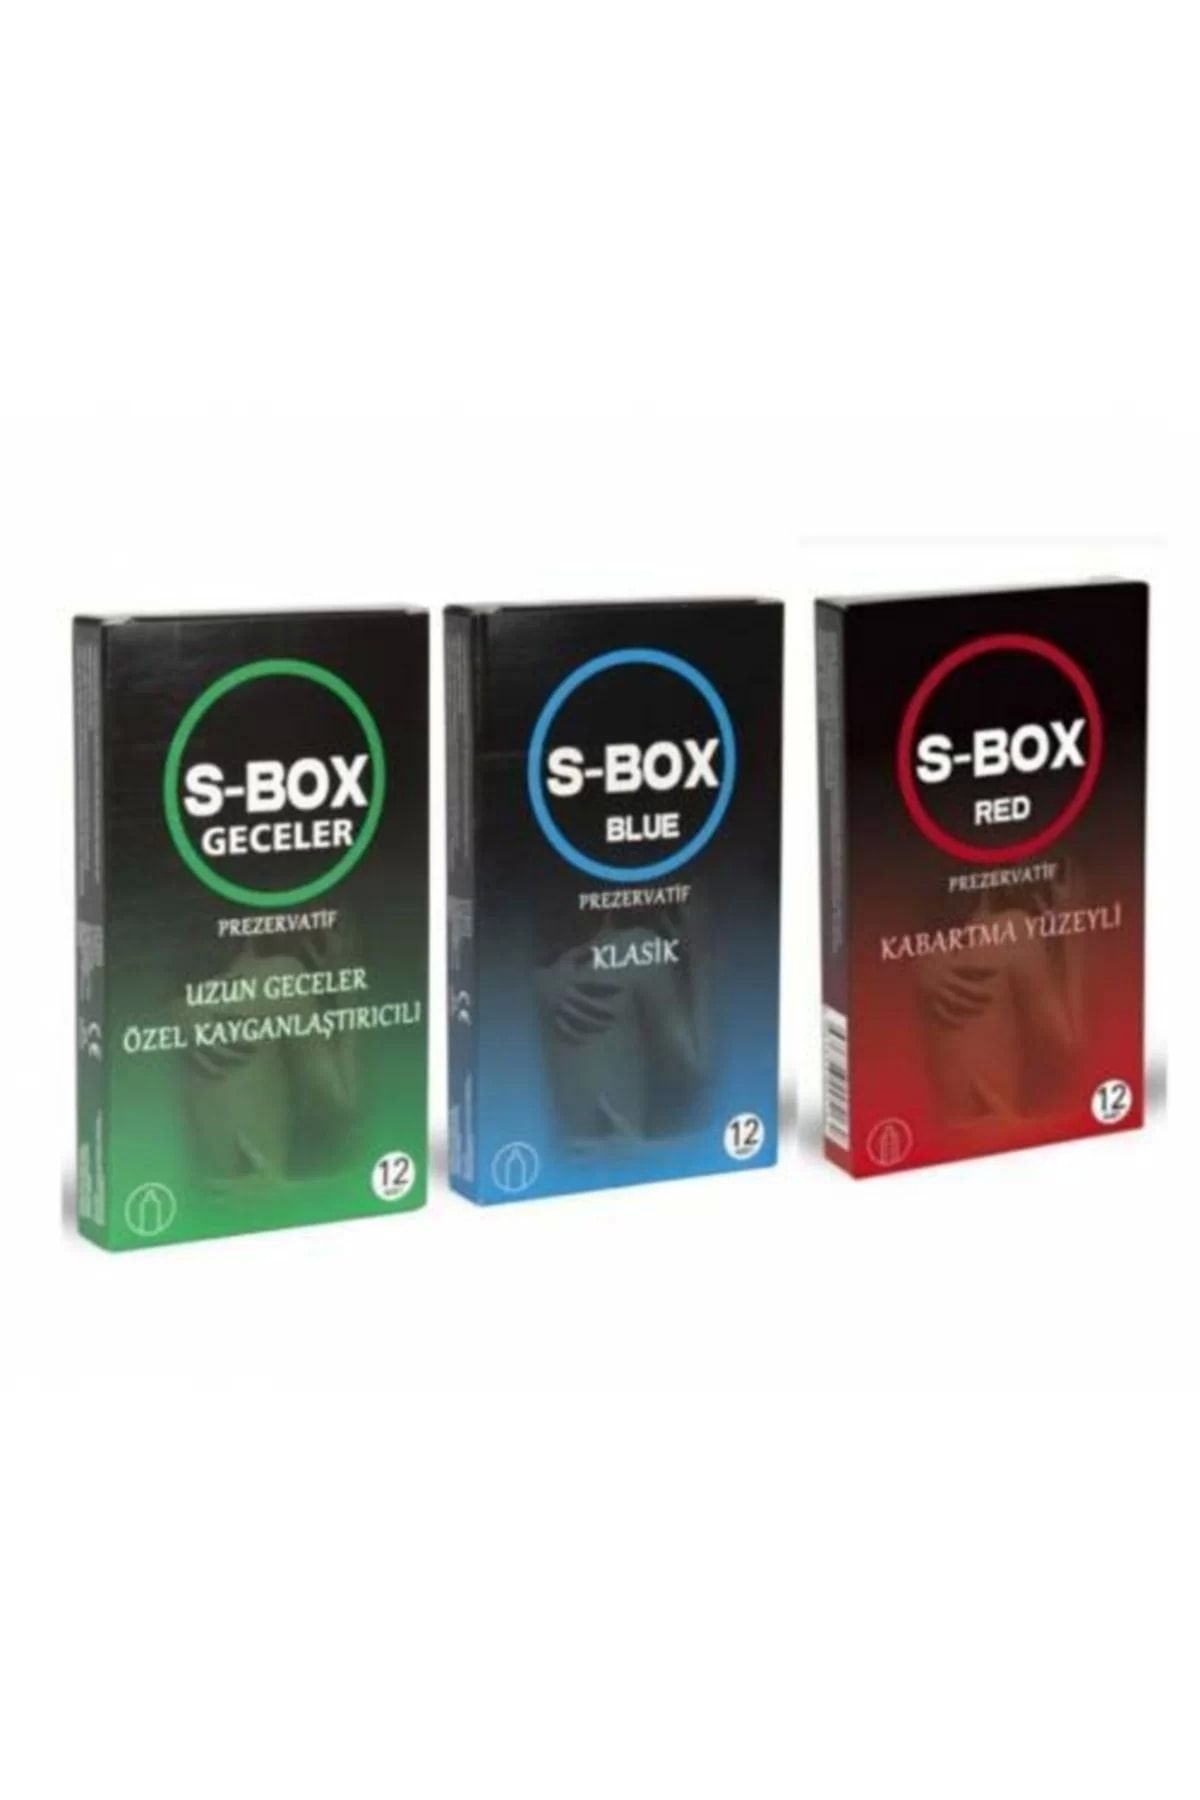 S-Box Prezervatif Seti Klasik 12 Li Red Kabartmalı 12 Li Uzun Geceler 12 Li